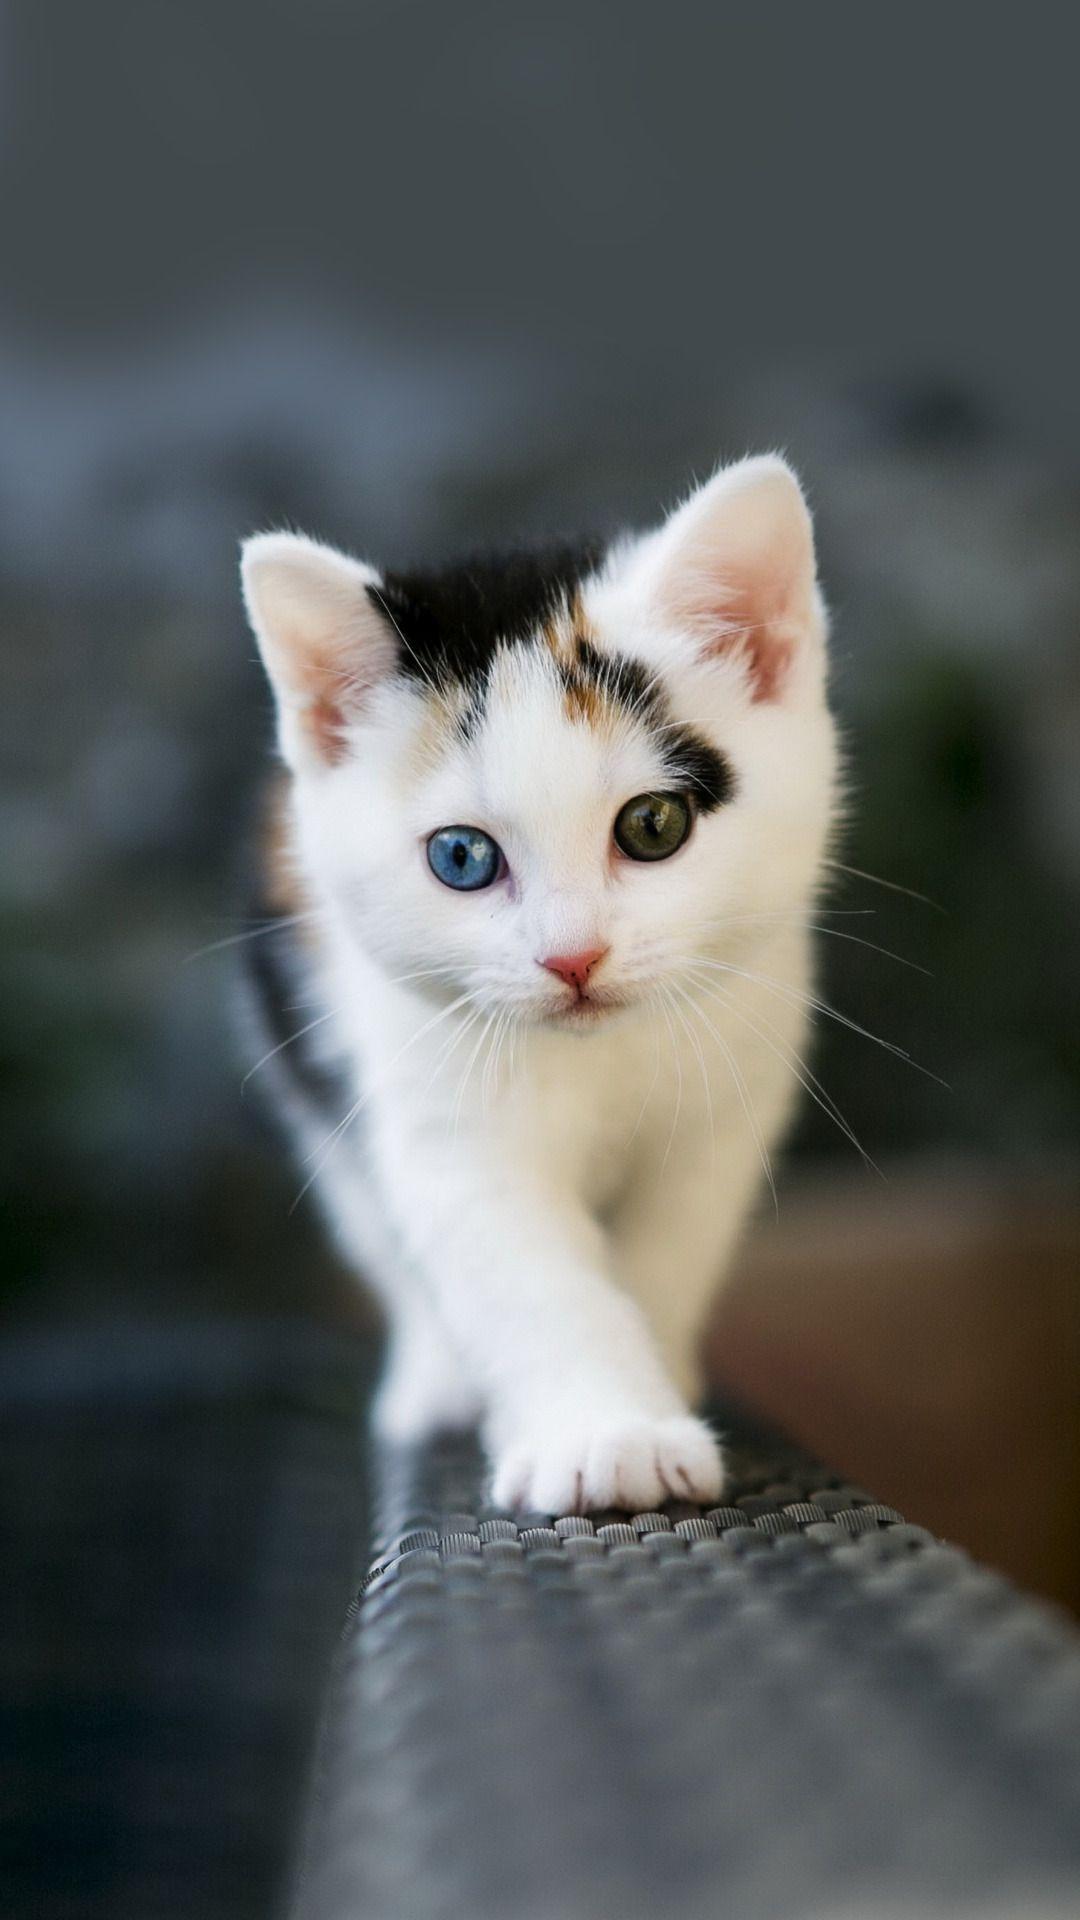 عکس بچه گربه دوست داشتنی دو رنگ سیاه و سفید